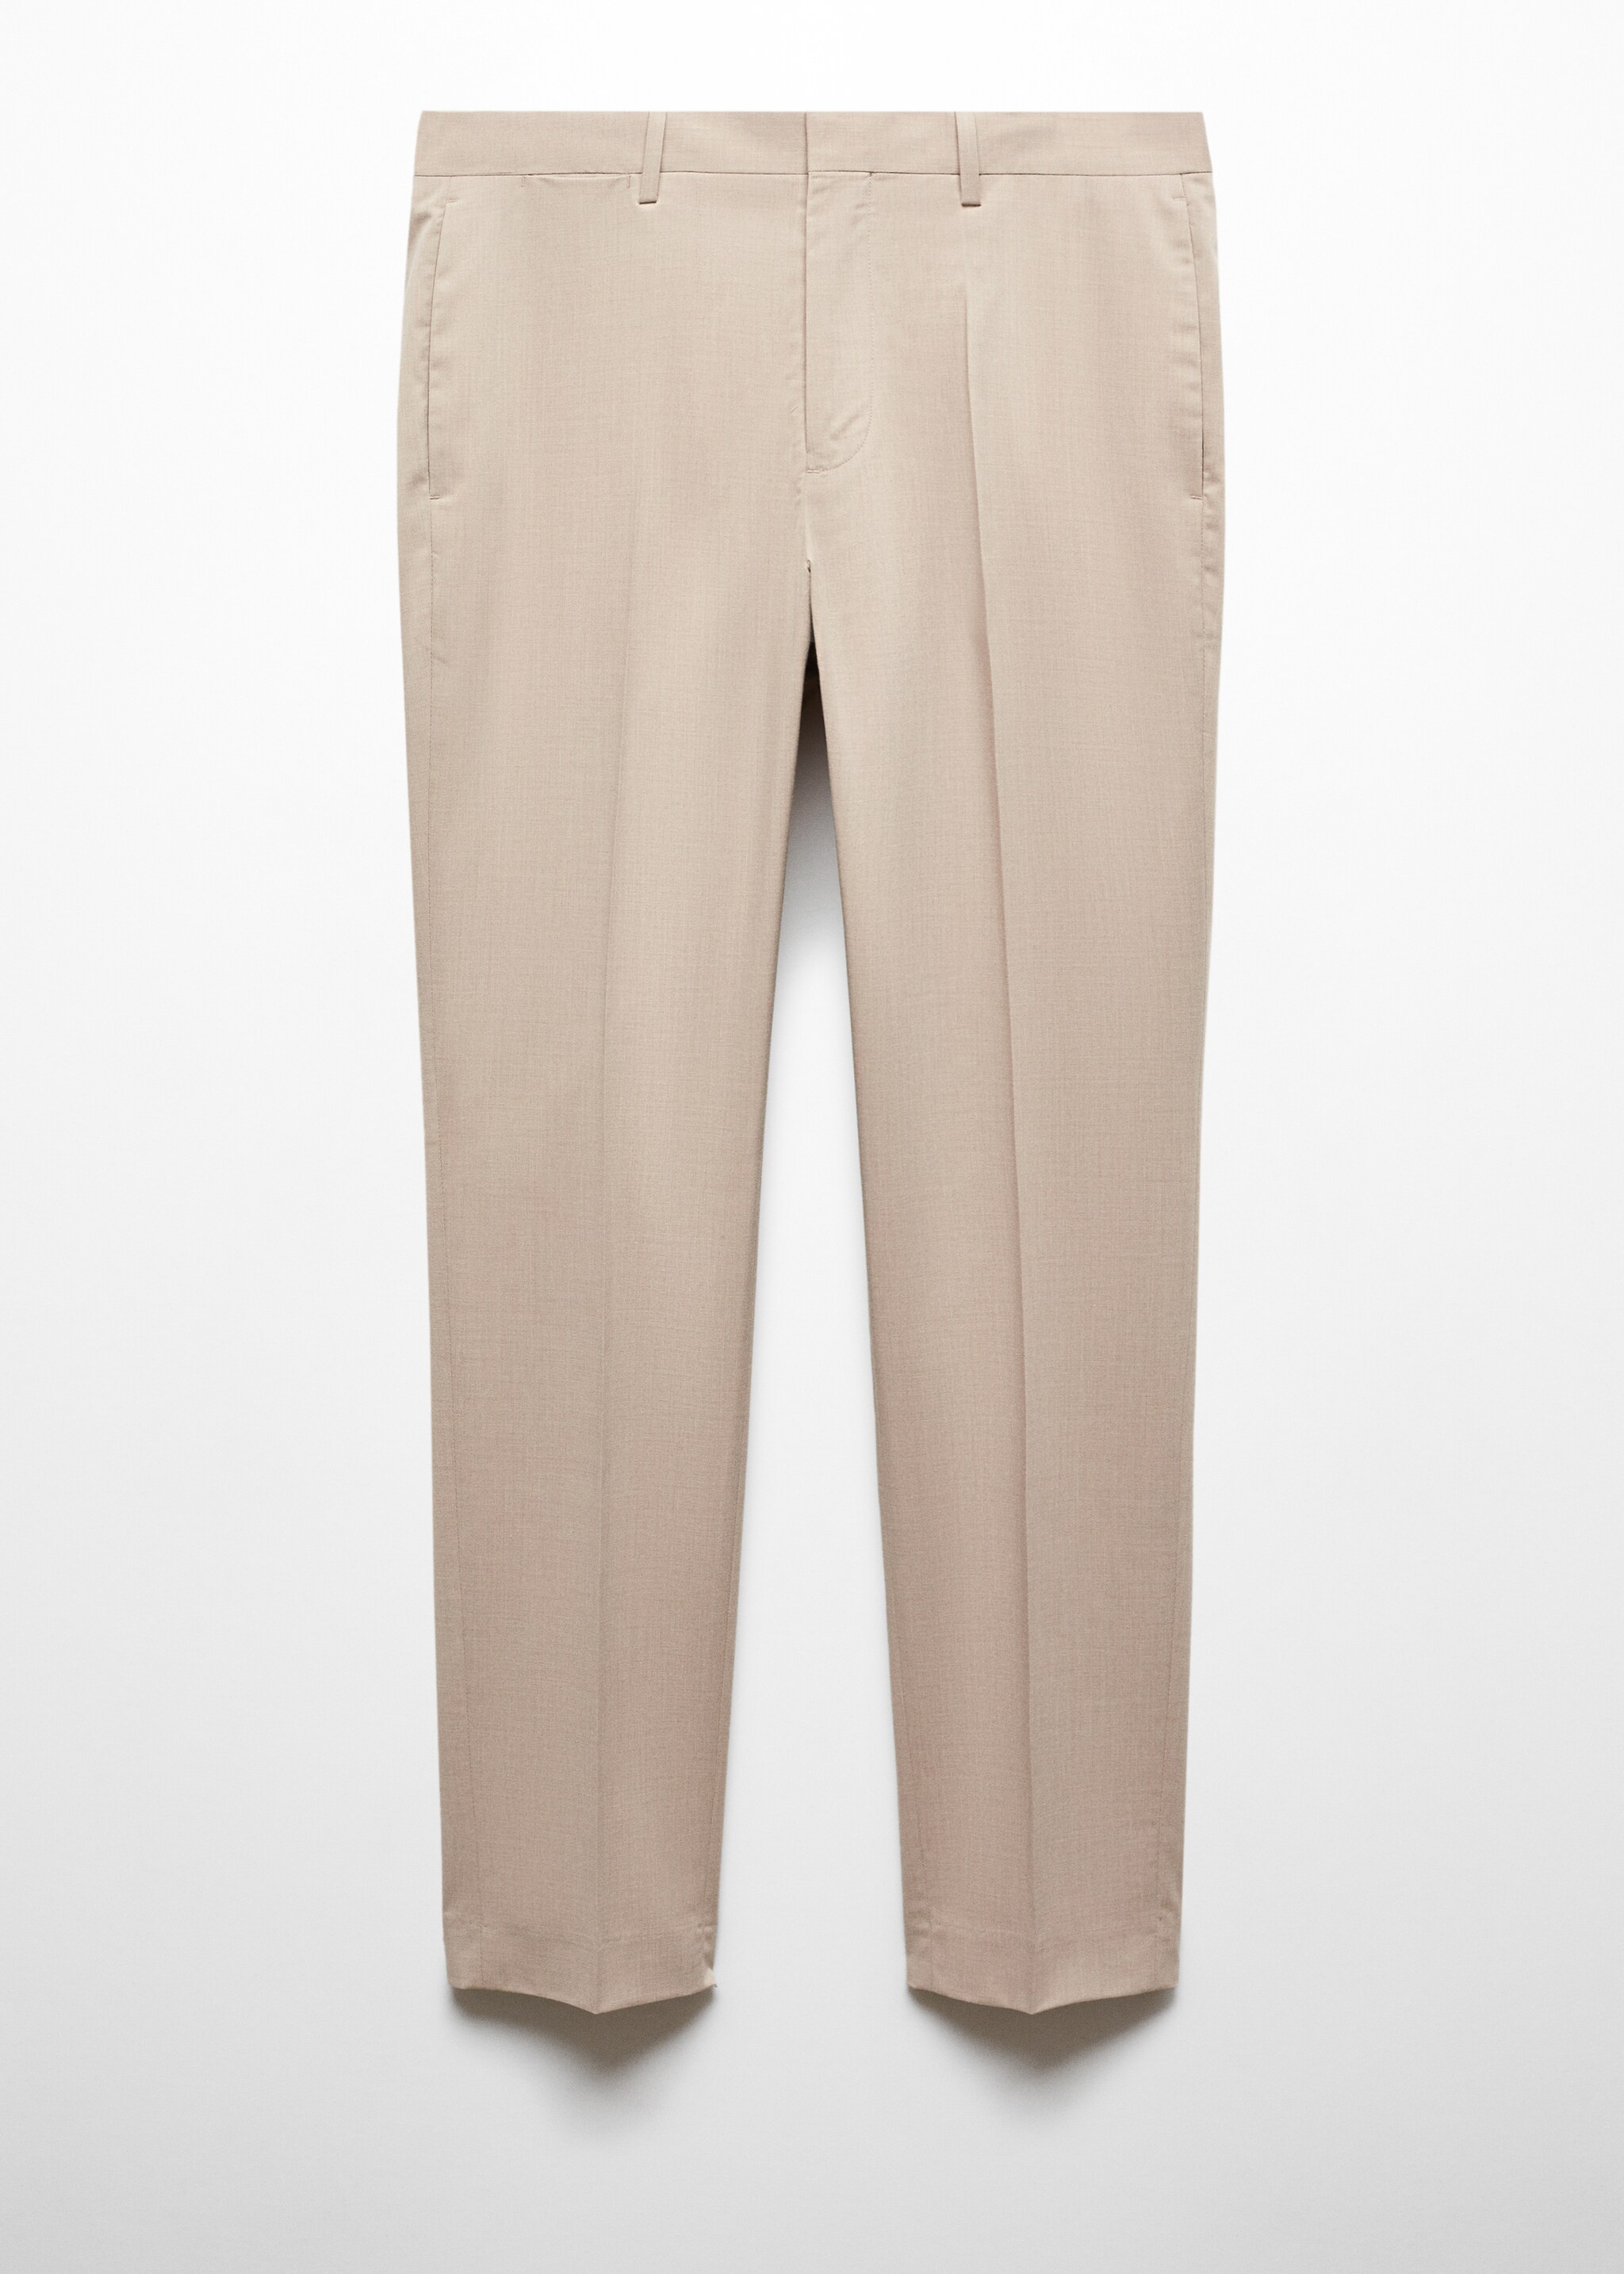 Süper slim fit streç kumaştan kumaş pantolon - Modelsiz ürün